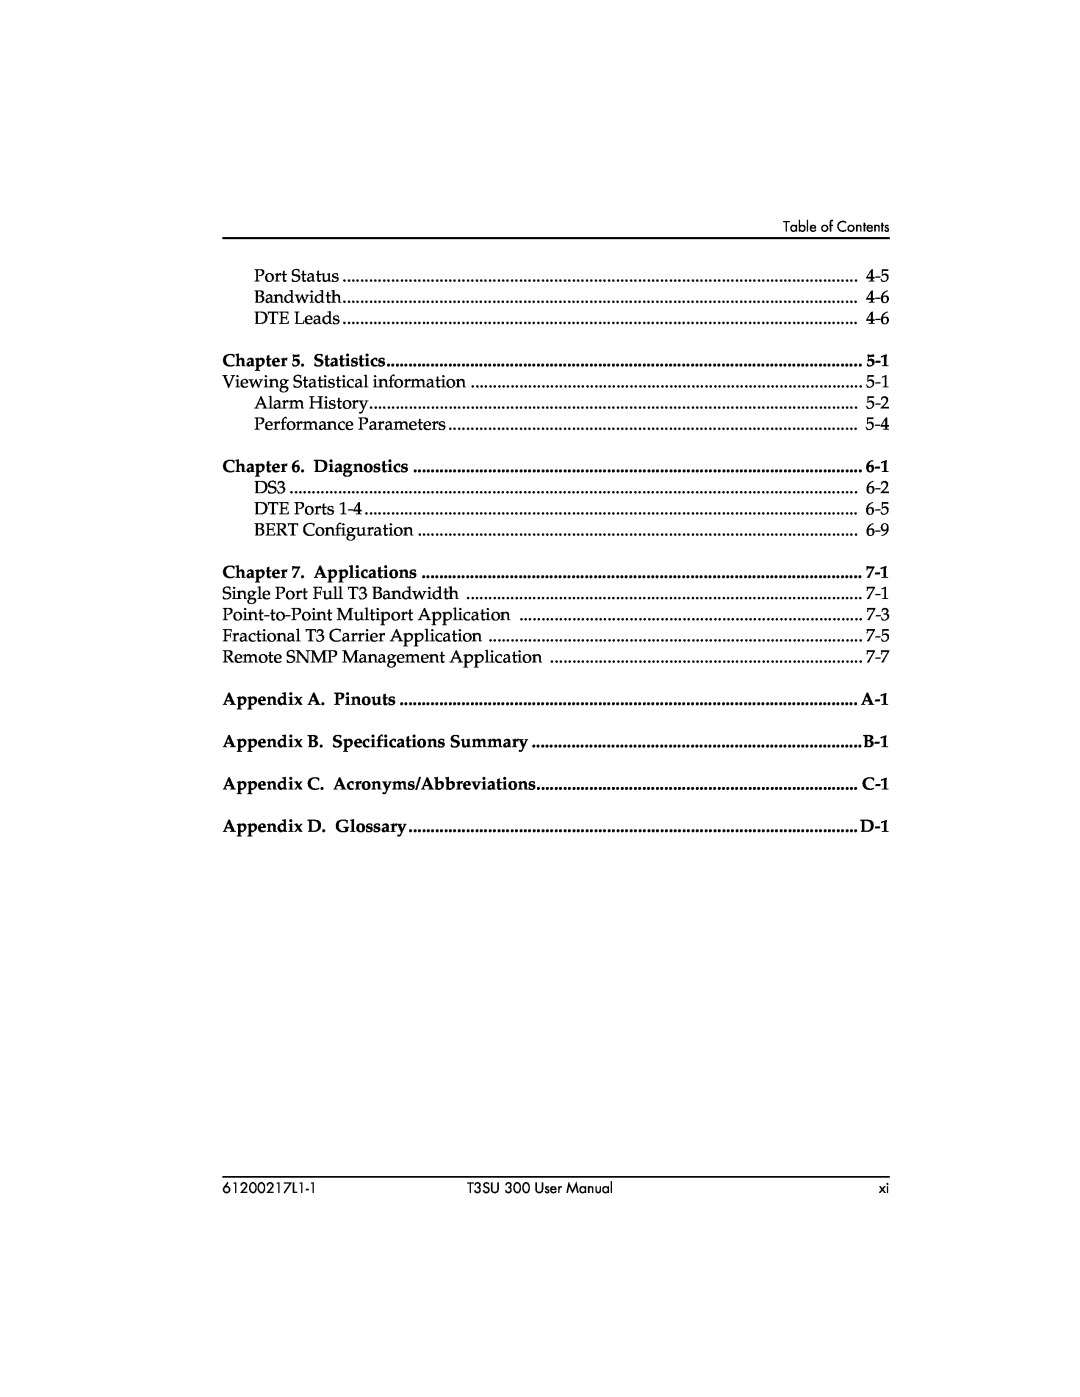 ADTRAN T3SU 300 user manual Appendix C. Acronyms/Abbreviations, Appendix D. Glossary, Appendix A. Pinouts 